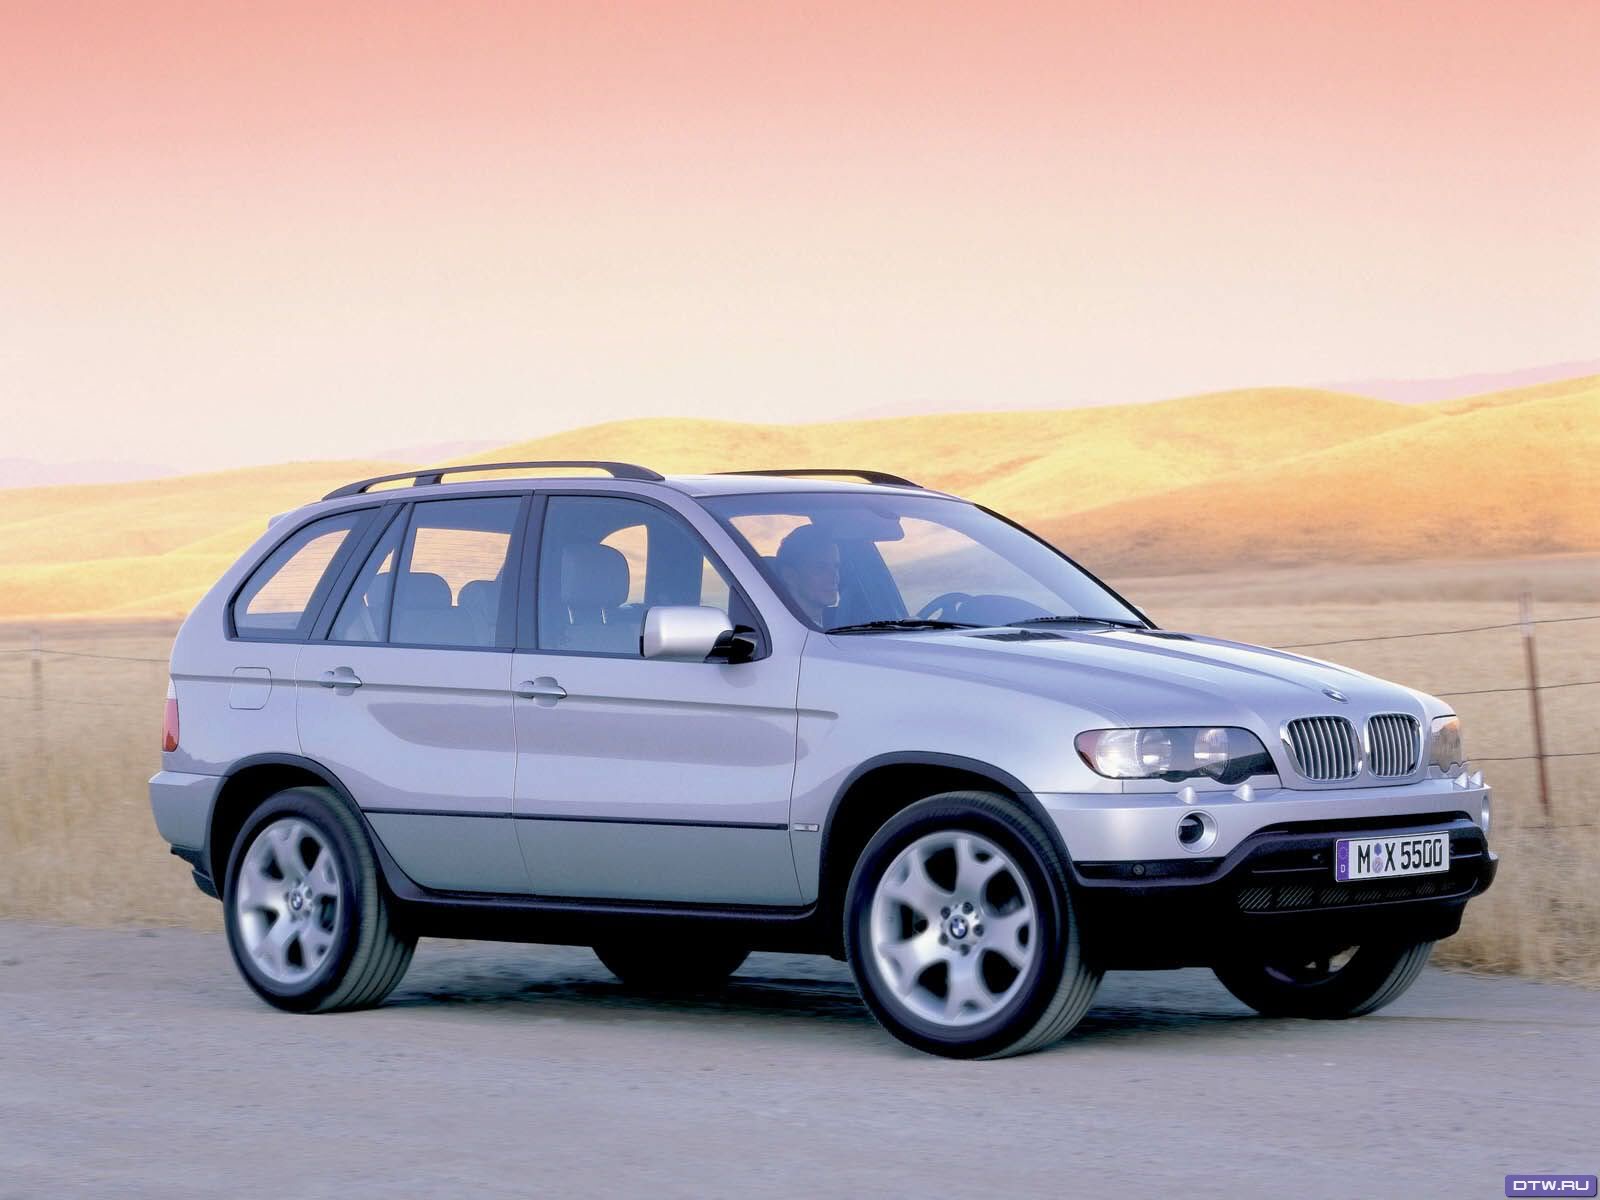 Vehículos BMW, modelo serie X5, años 2002-2005